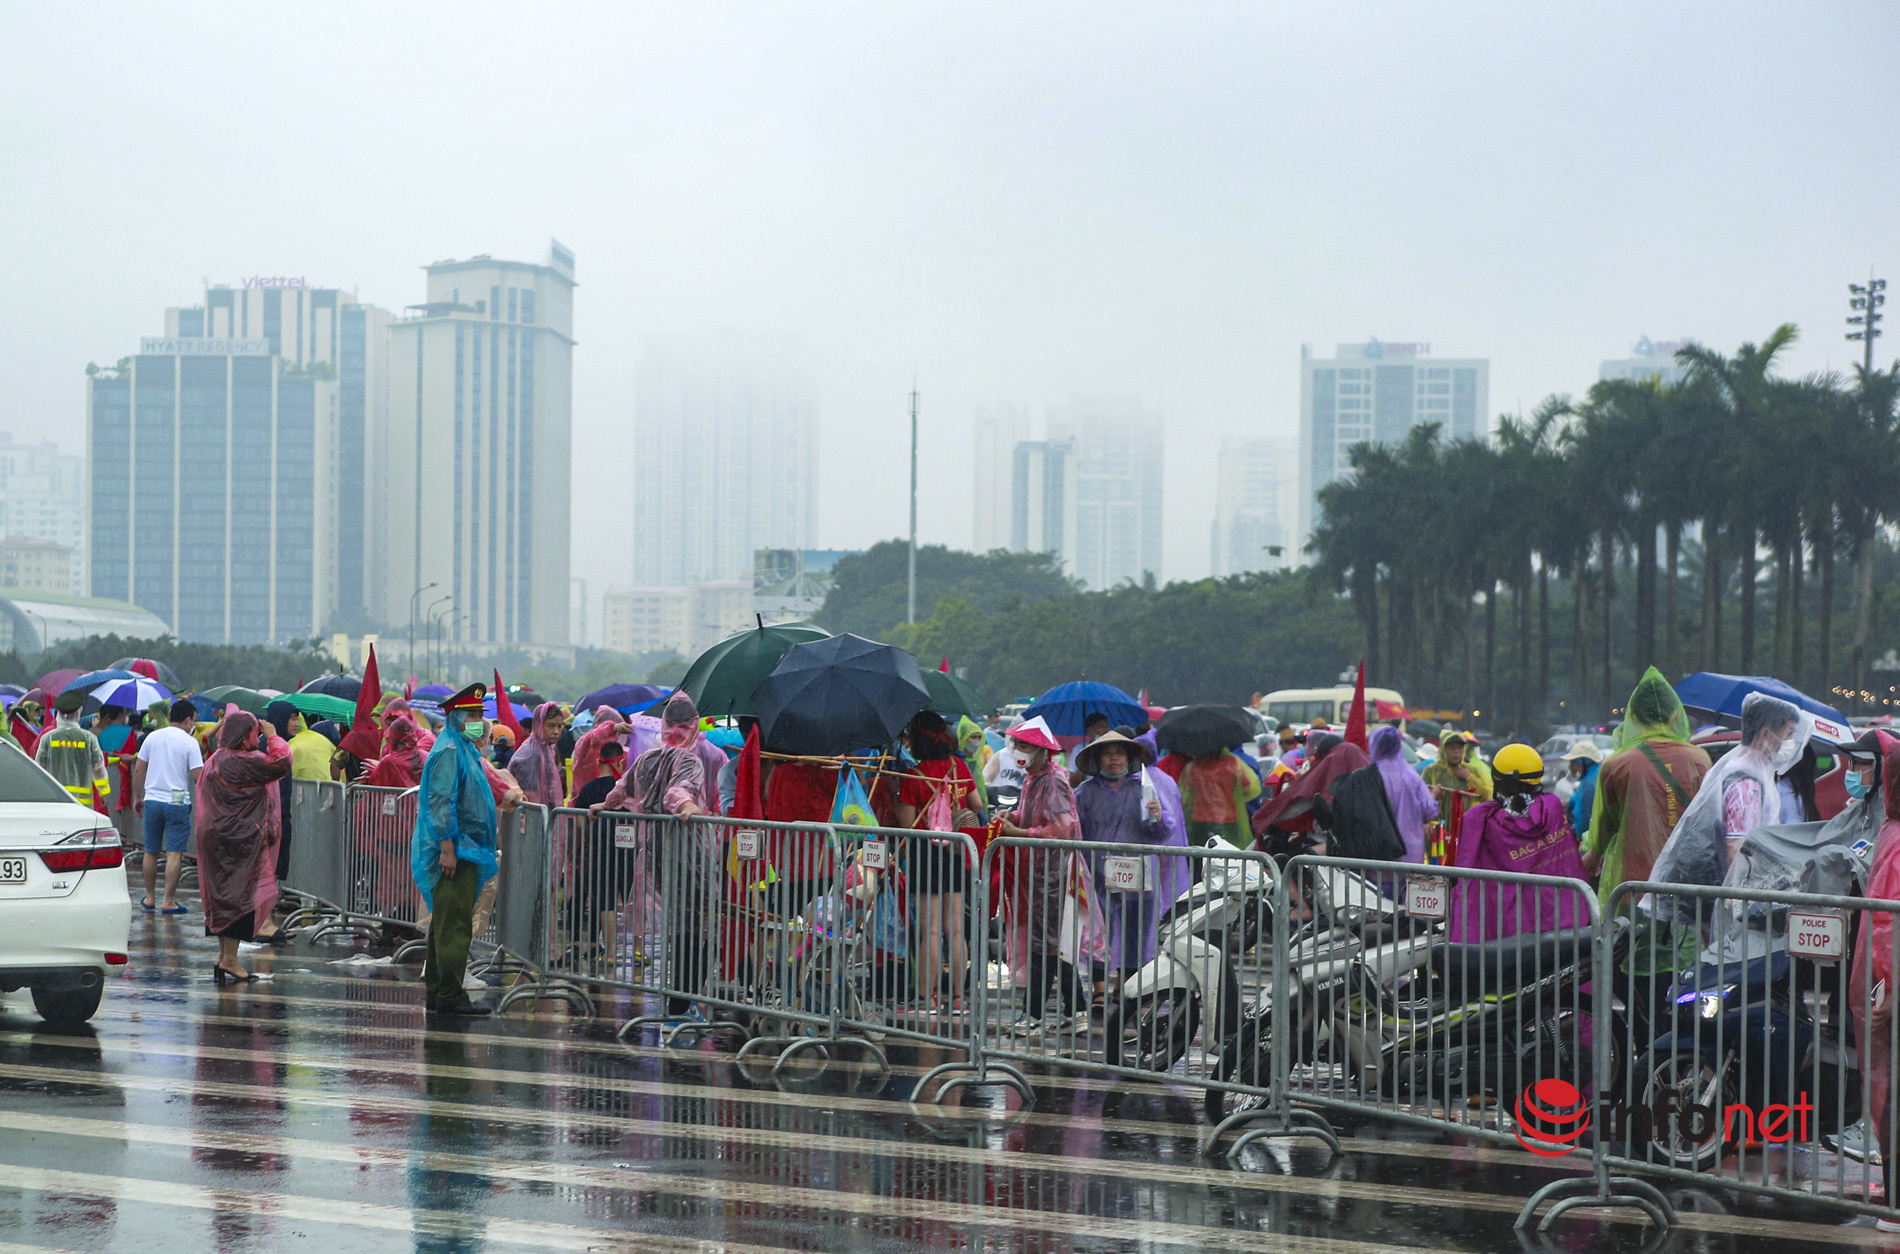 Hàng vạn người đội mưa đến sân Mỹ Đình 'tiếp lửa' cho U23 Việt Nam đấu U23 Thái Lan